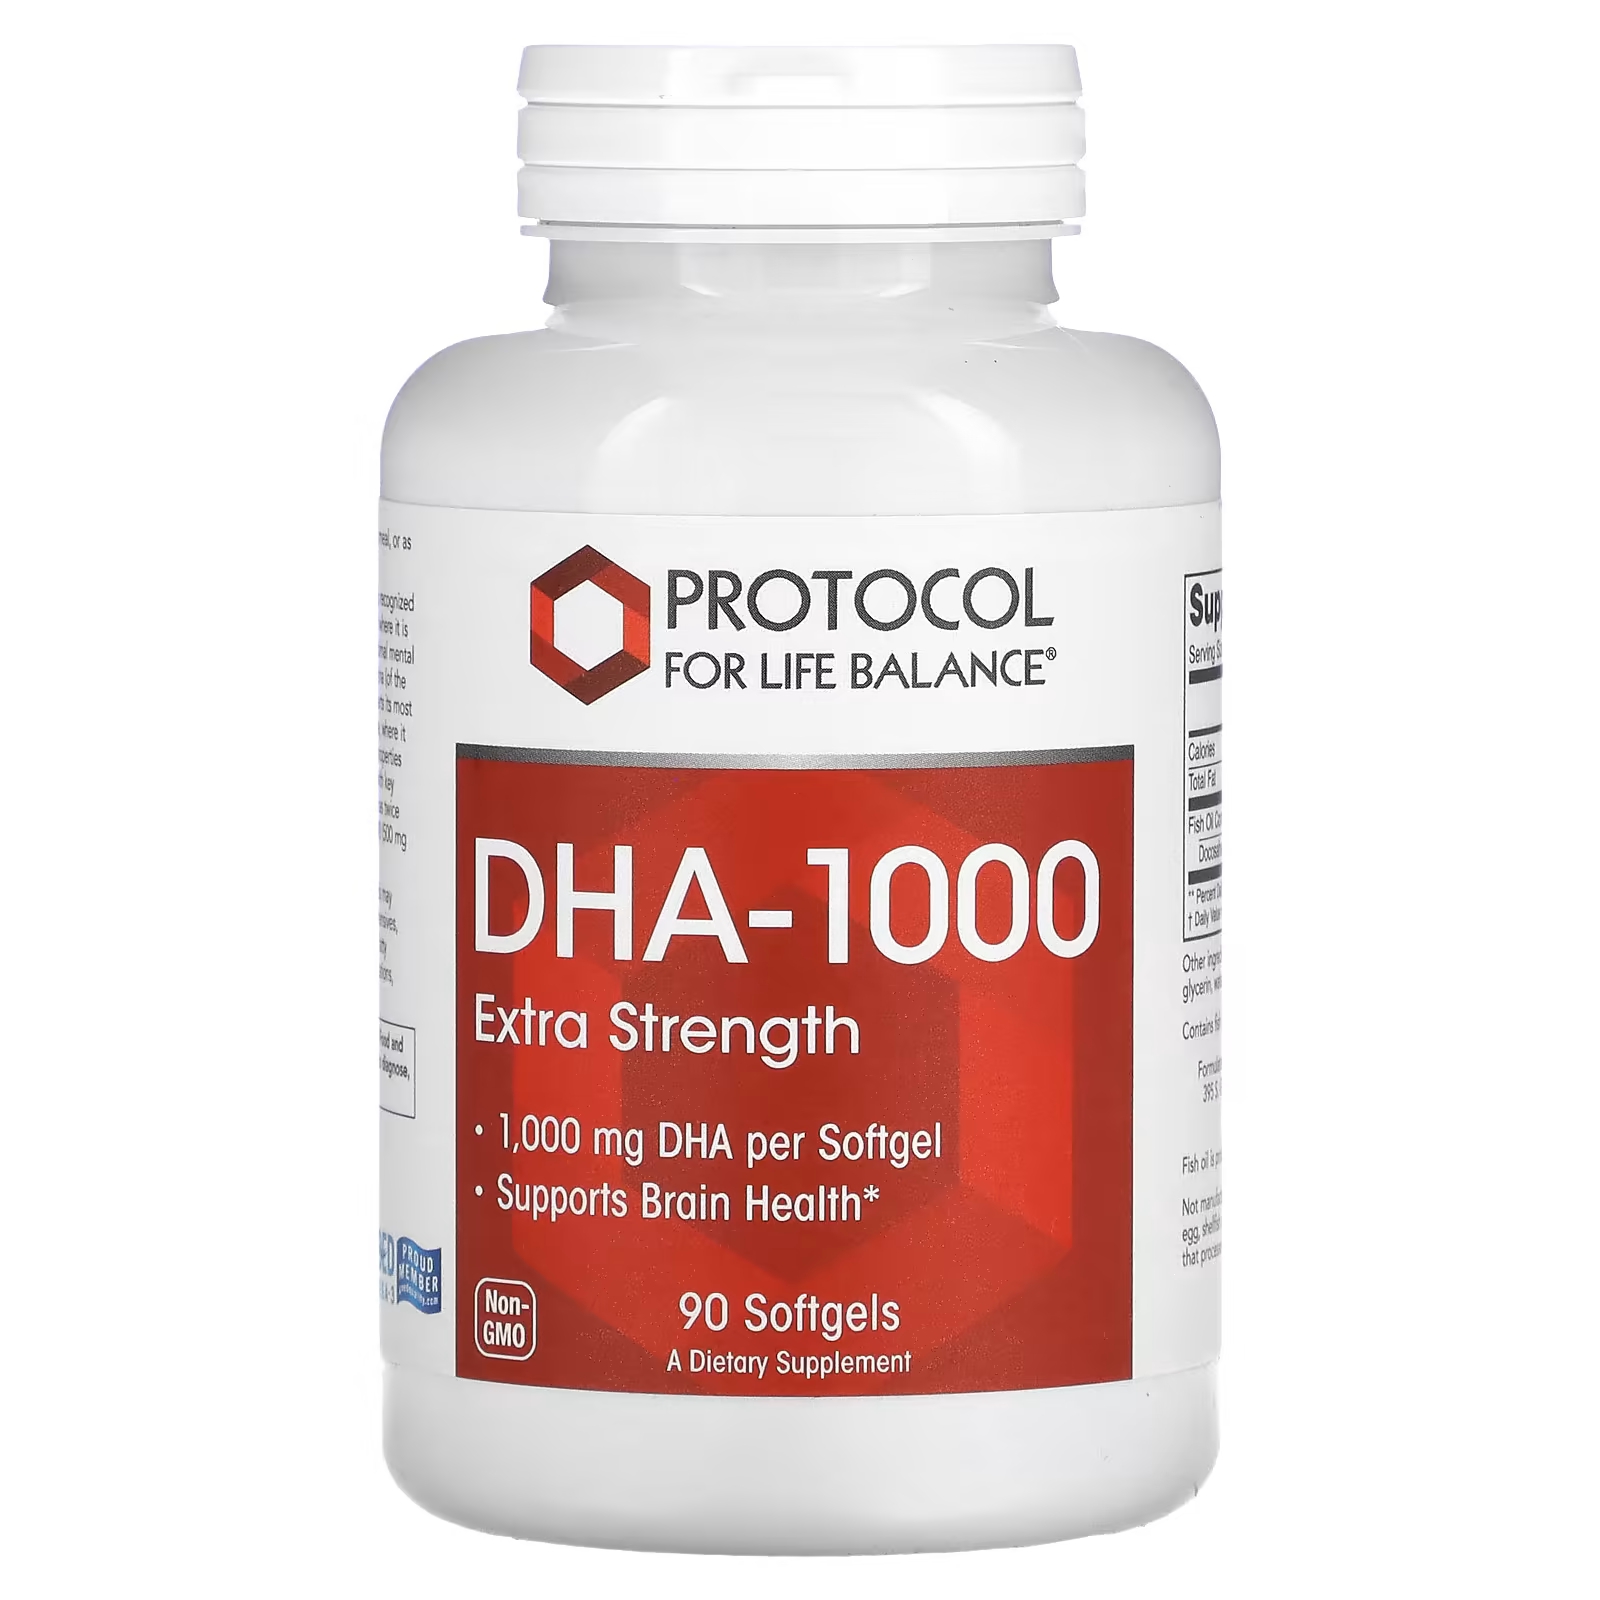 Протокол Life Balance DHA-100 повышенной силы, 1000 мг, 90 мягких таблеток Protocol for Life Balance protocol for life balance дгк 100 повышенная сила действия 1000 мг 90 мягких таблеток